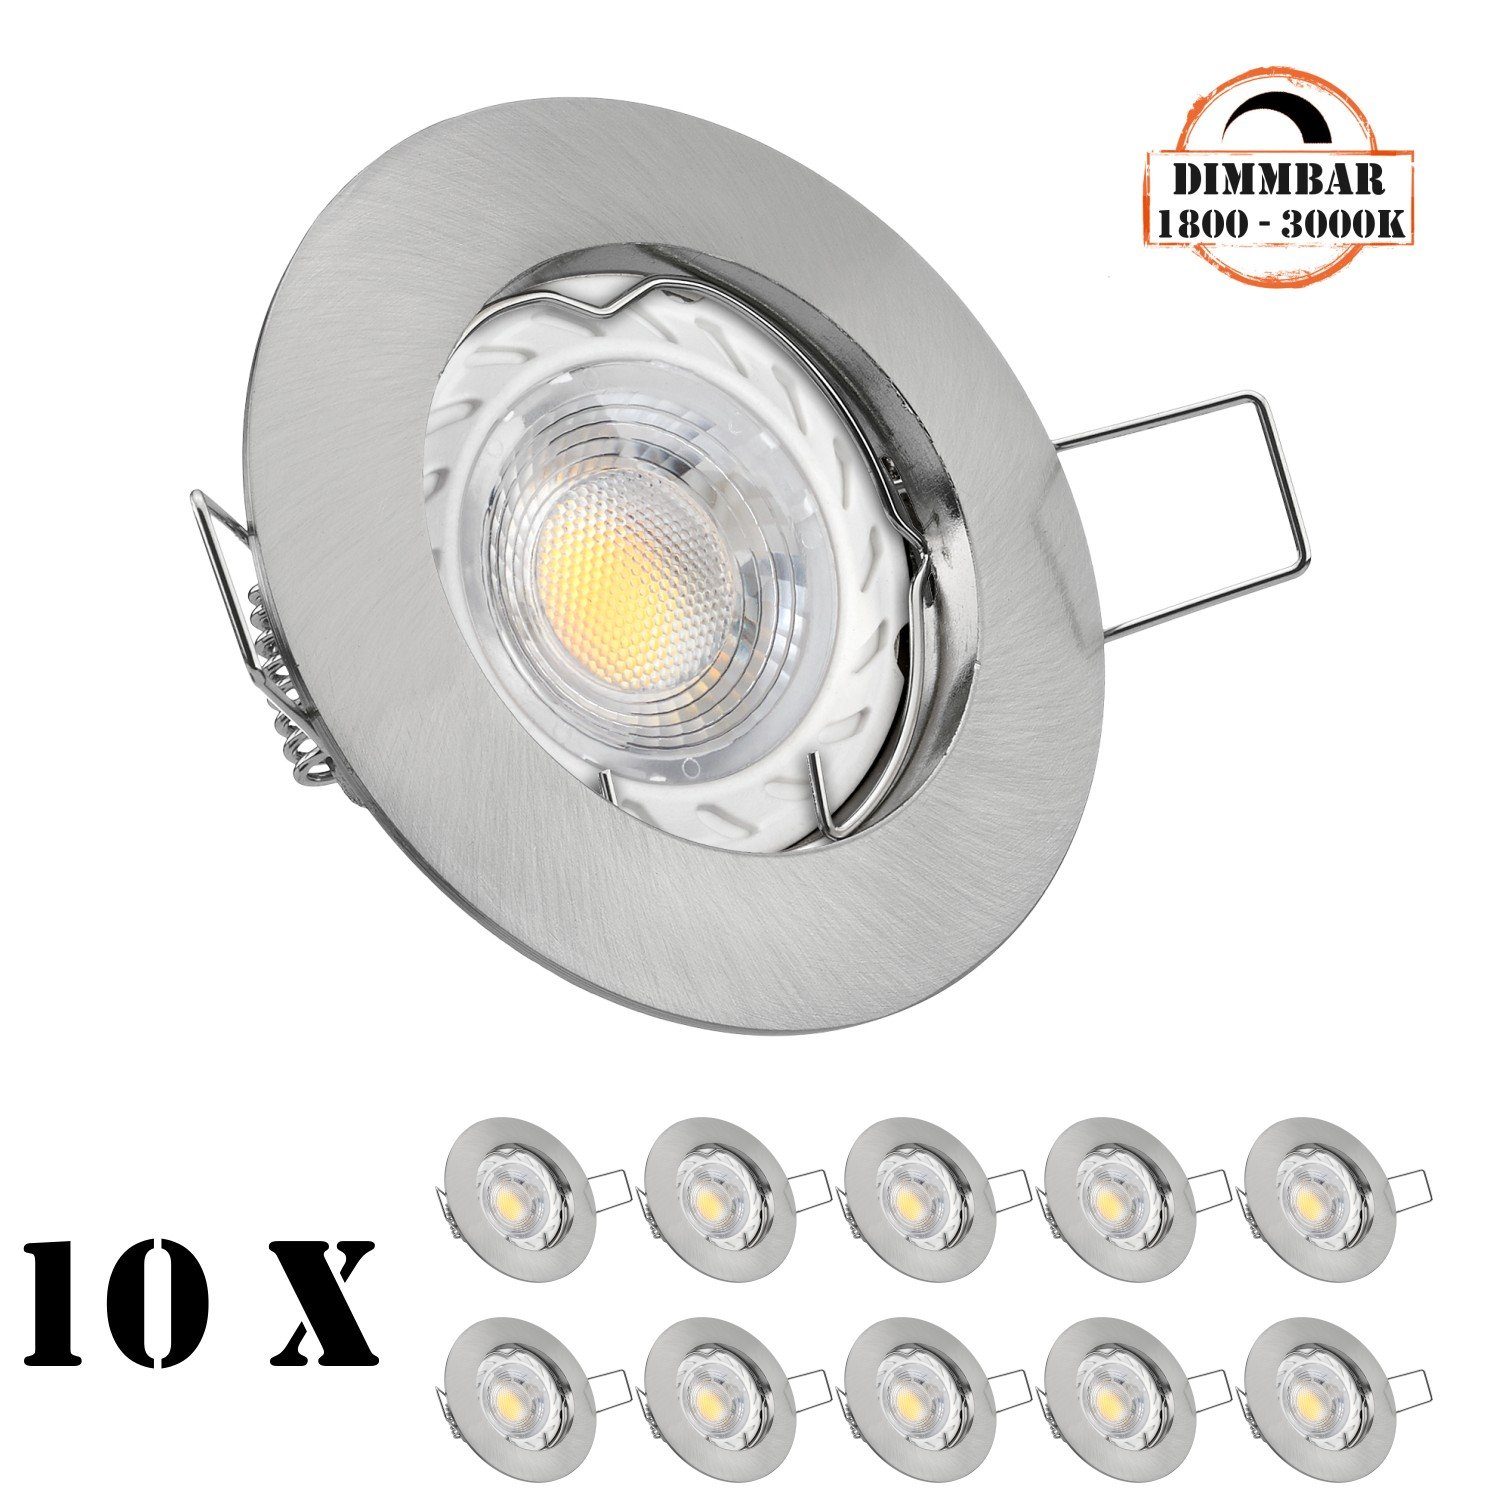 LEDANDO LED Einbaustrahler 10er LED Einbaustrahler Set GU10 in edelstahl / silber gebürstet mit 5